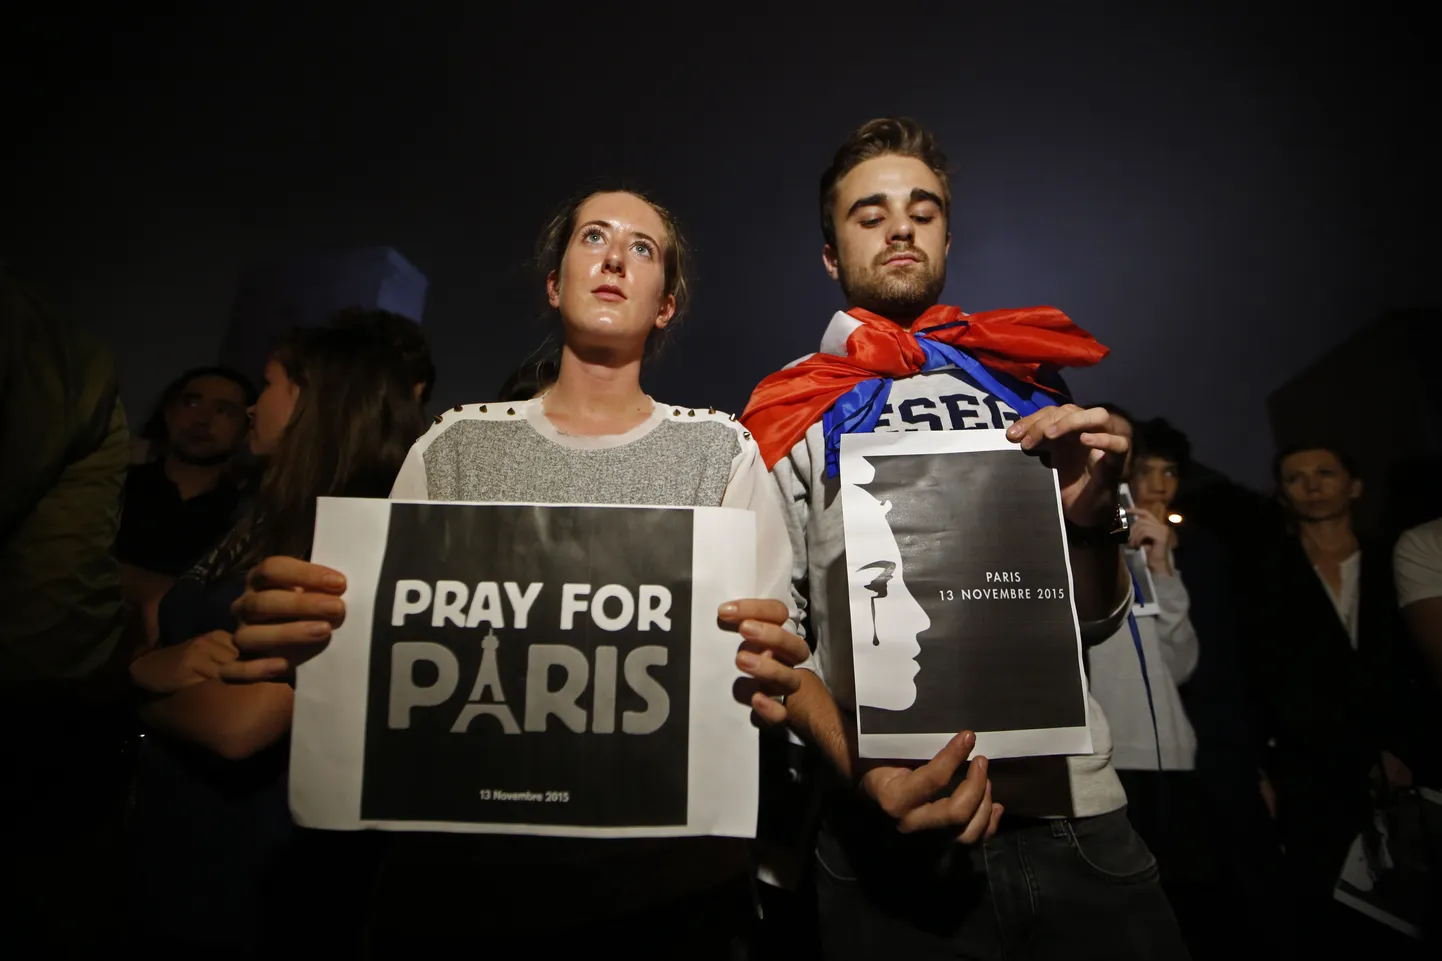 Вечером в пятницу 13 ноября в Париже произошла серия терактов, в результате которых погибли более 120 человек.